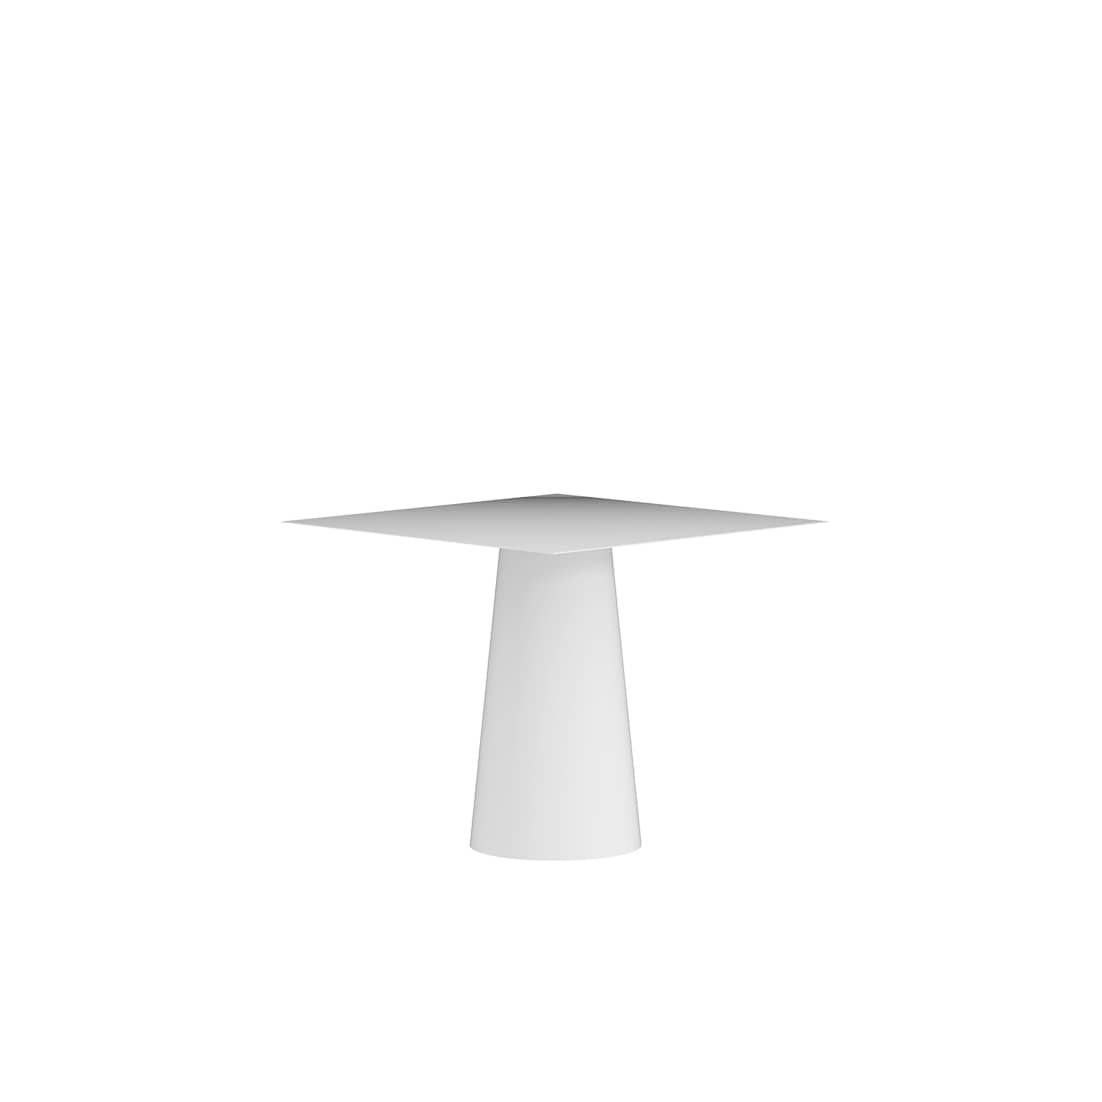 Der Conic Square Dining Table ist ein monolithisches Stück, das als Esstisch für den Innen- und Außenbereich konzipiert wurde. 
Er wird in Handarbeit aus galvanisiertem Aluminium gefertigt und mit einer matten elektrostatischen Beschichtung